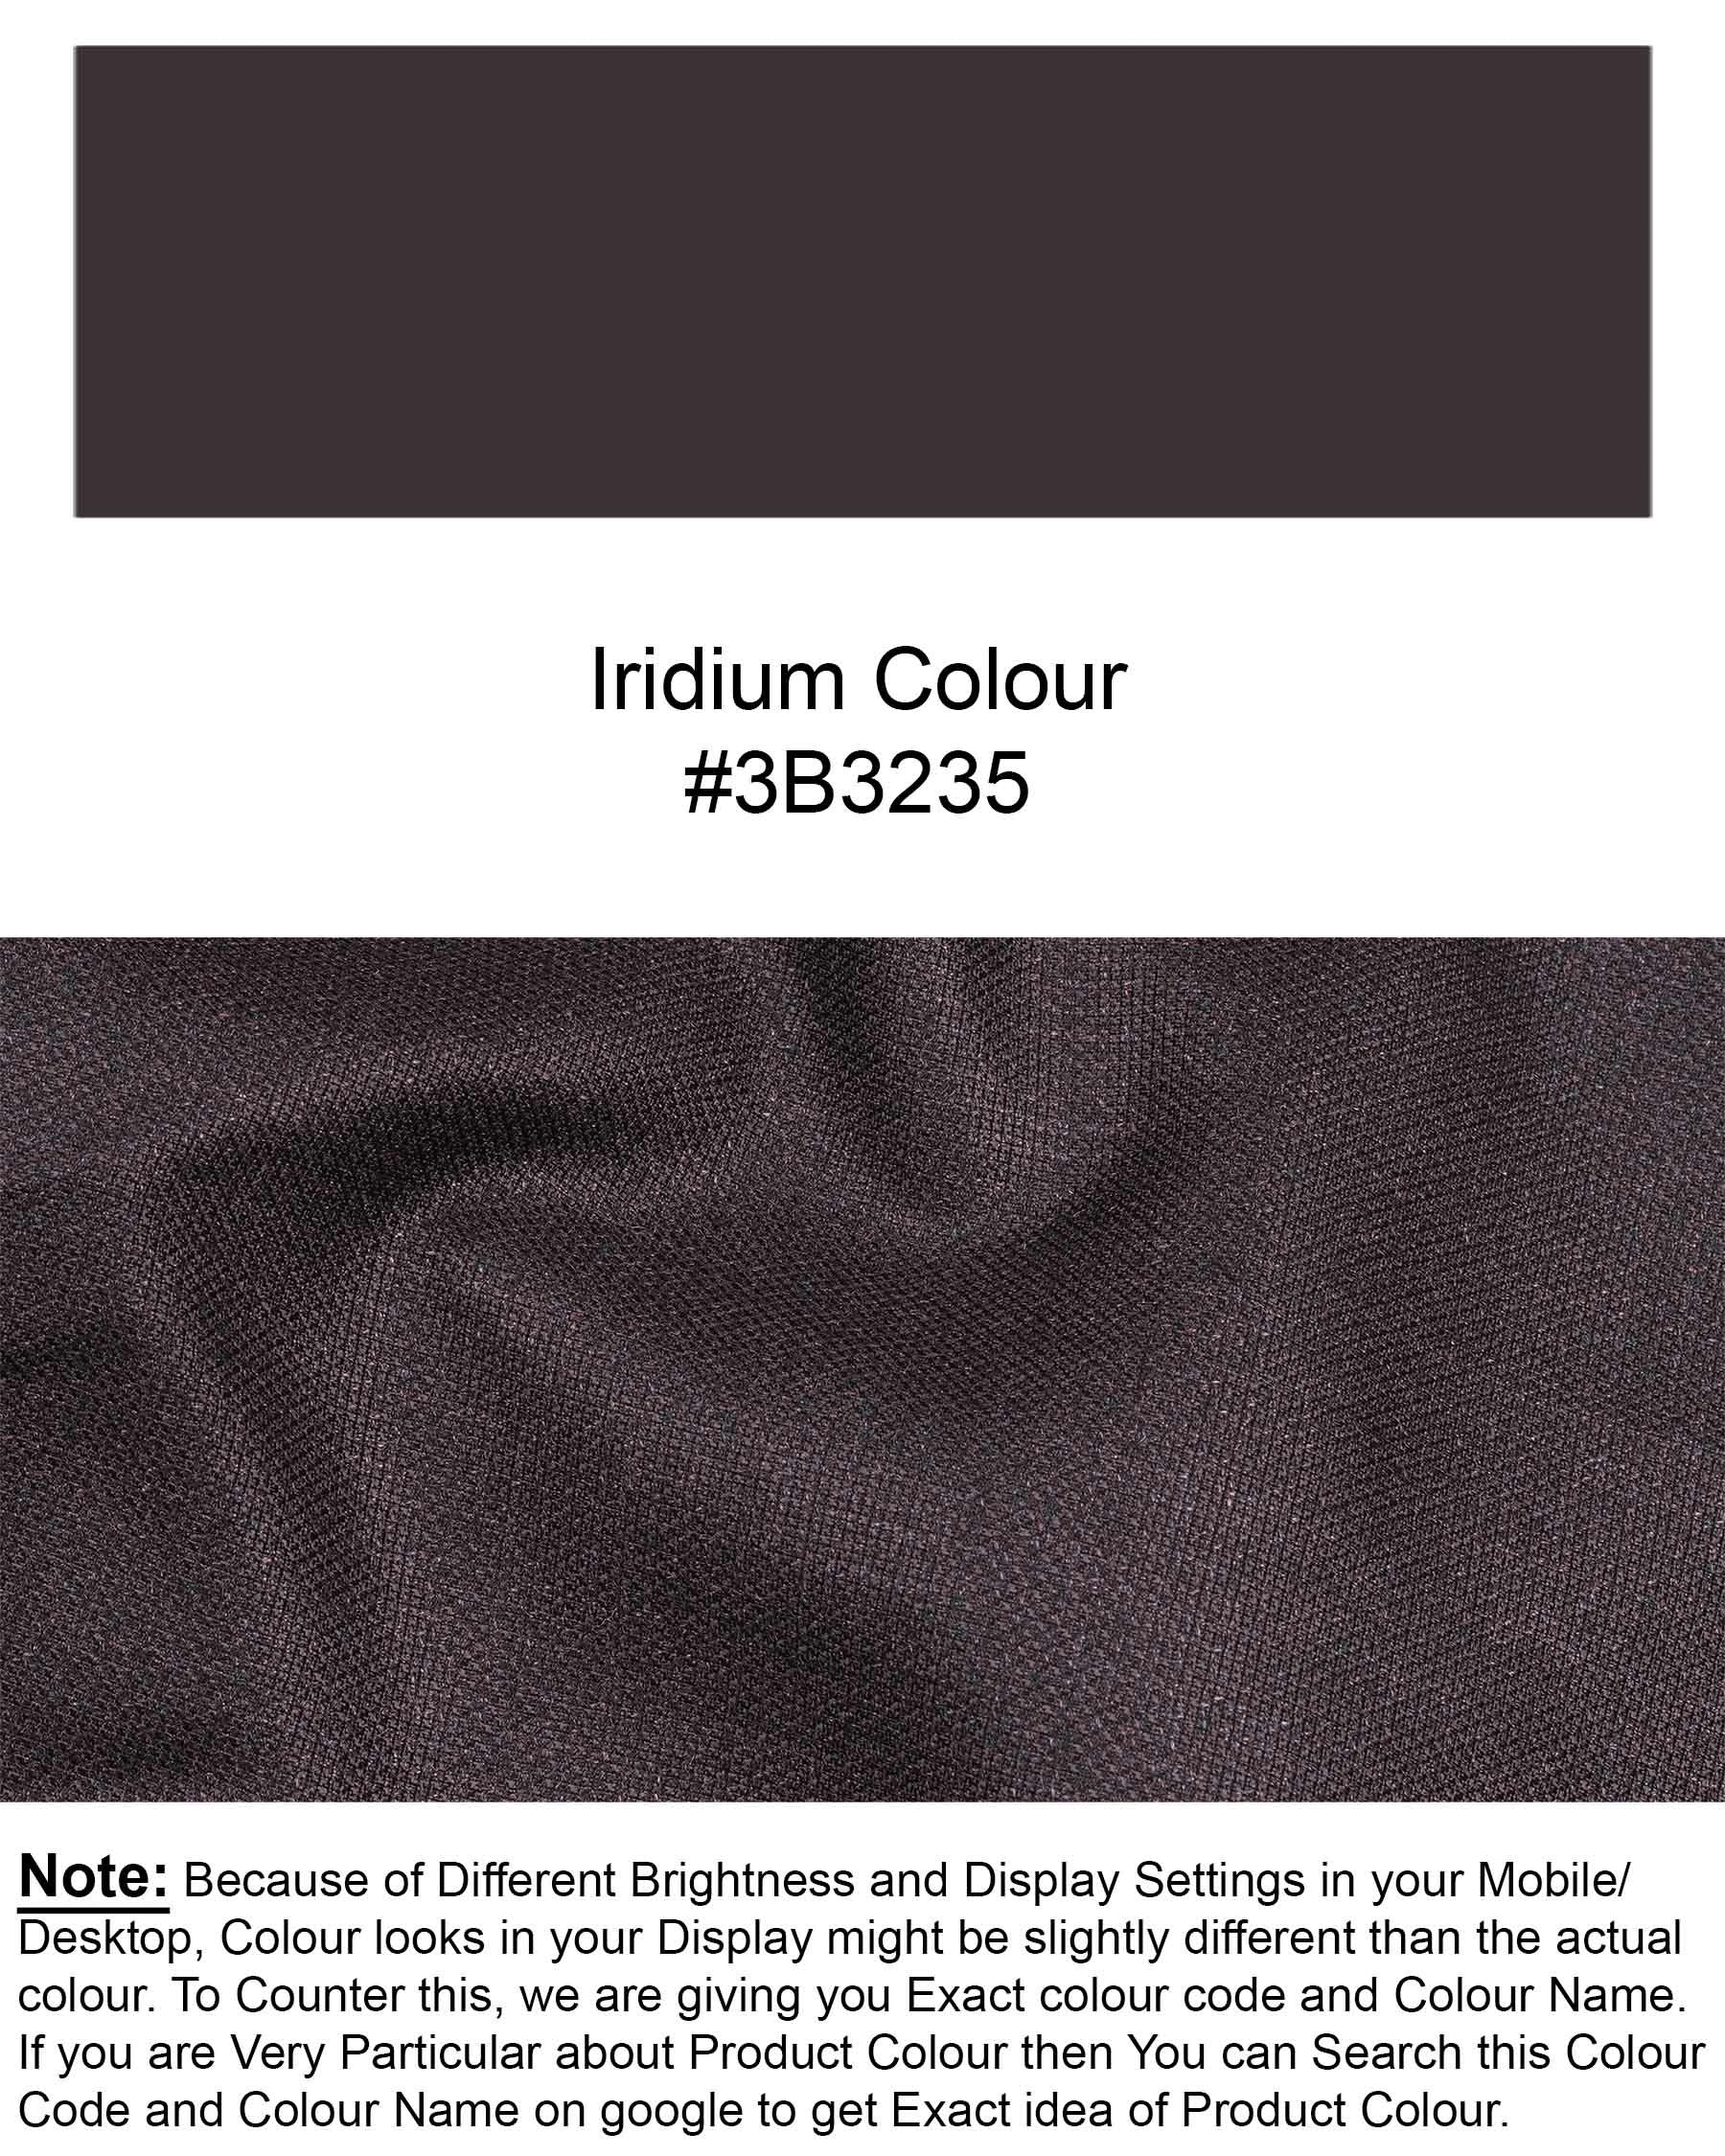 Iridium Textured Pant T1929-28, T1929-30, T1929-32, T1929-34, T1929-36, T1929-38, T1929-40, T1929-42, T1929-44